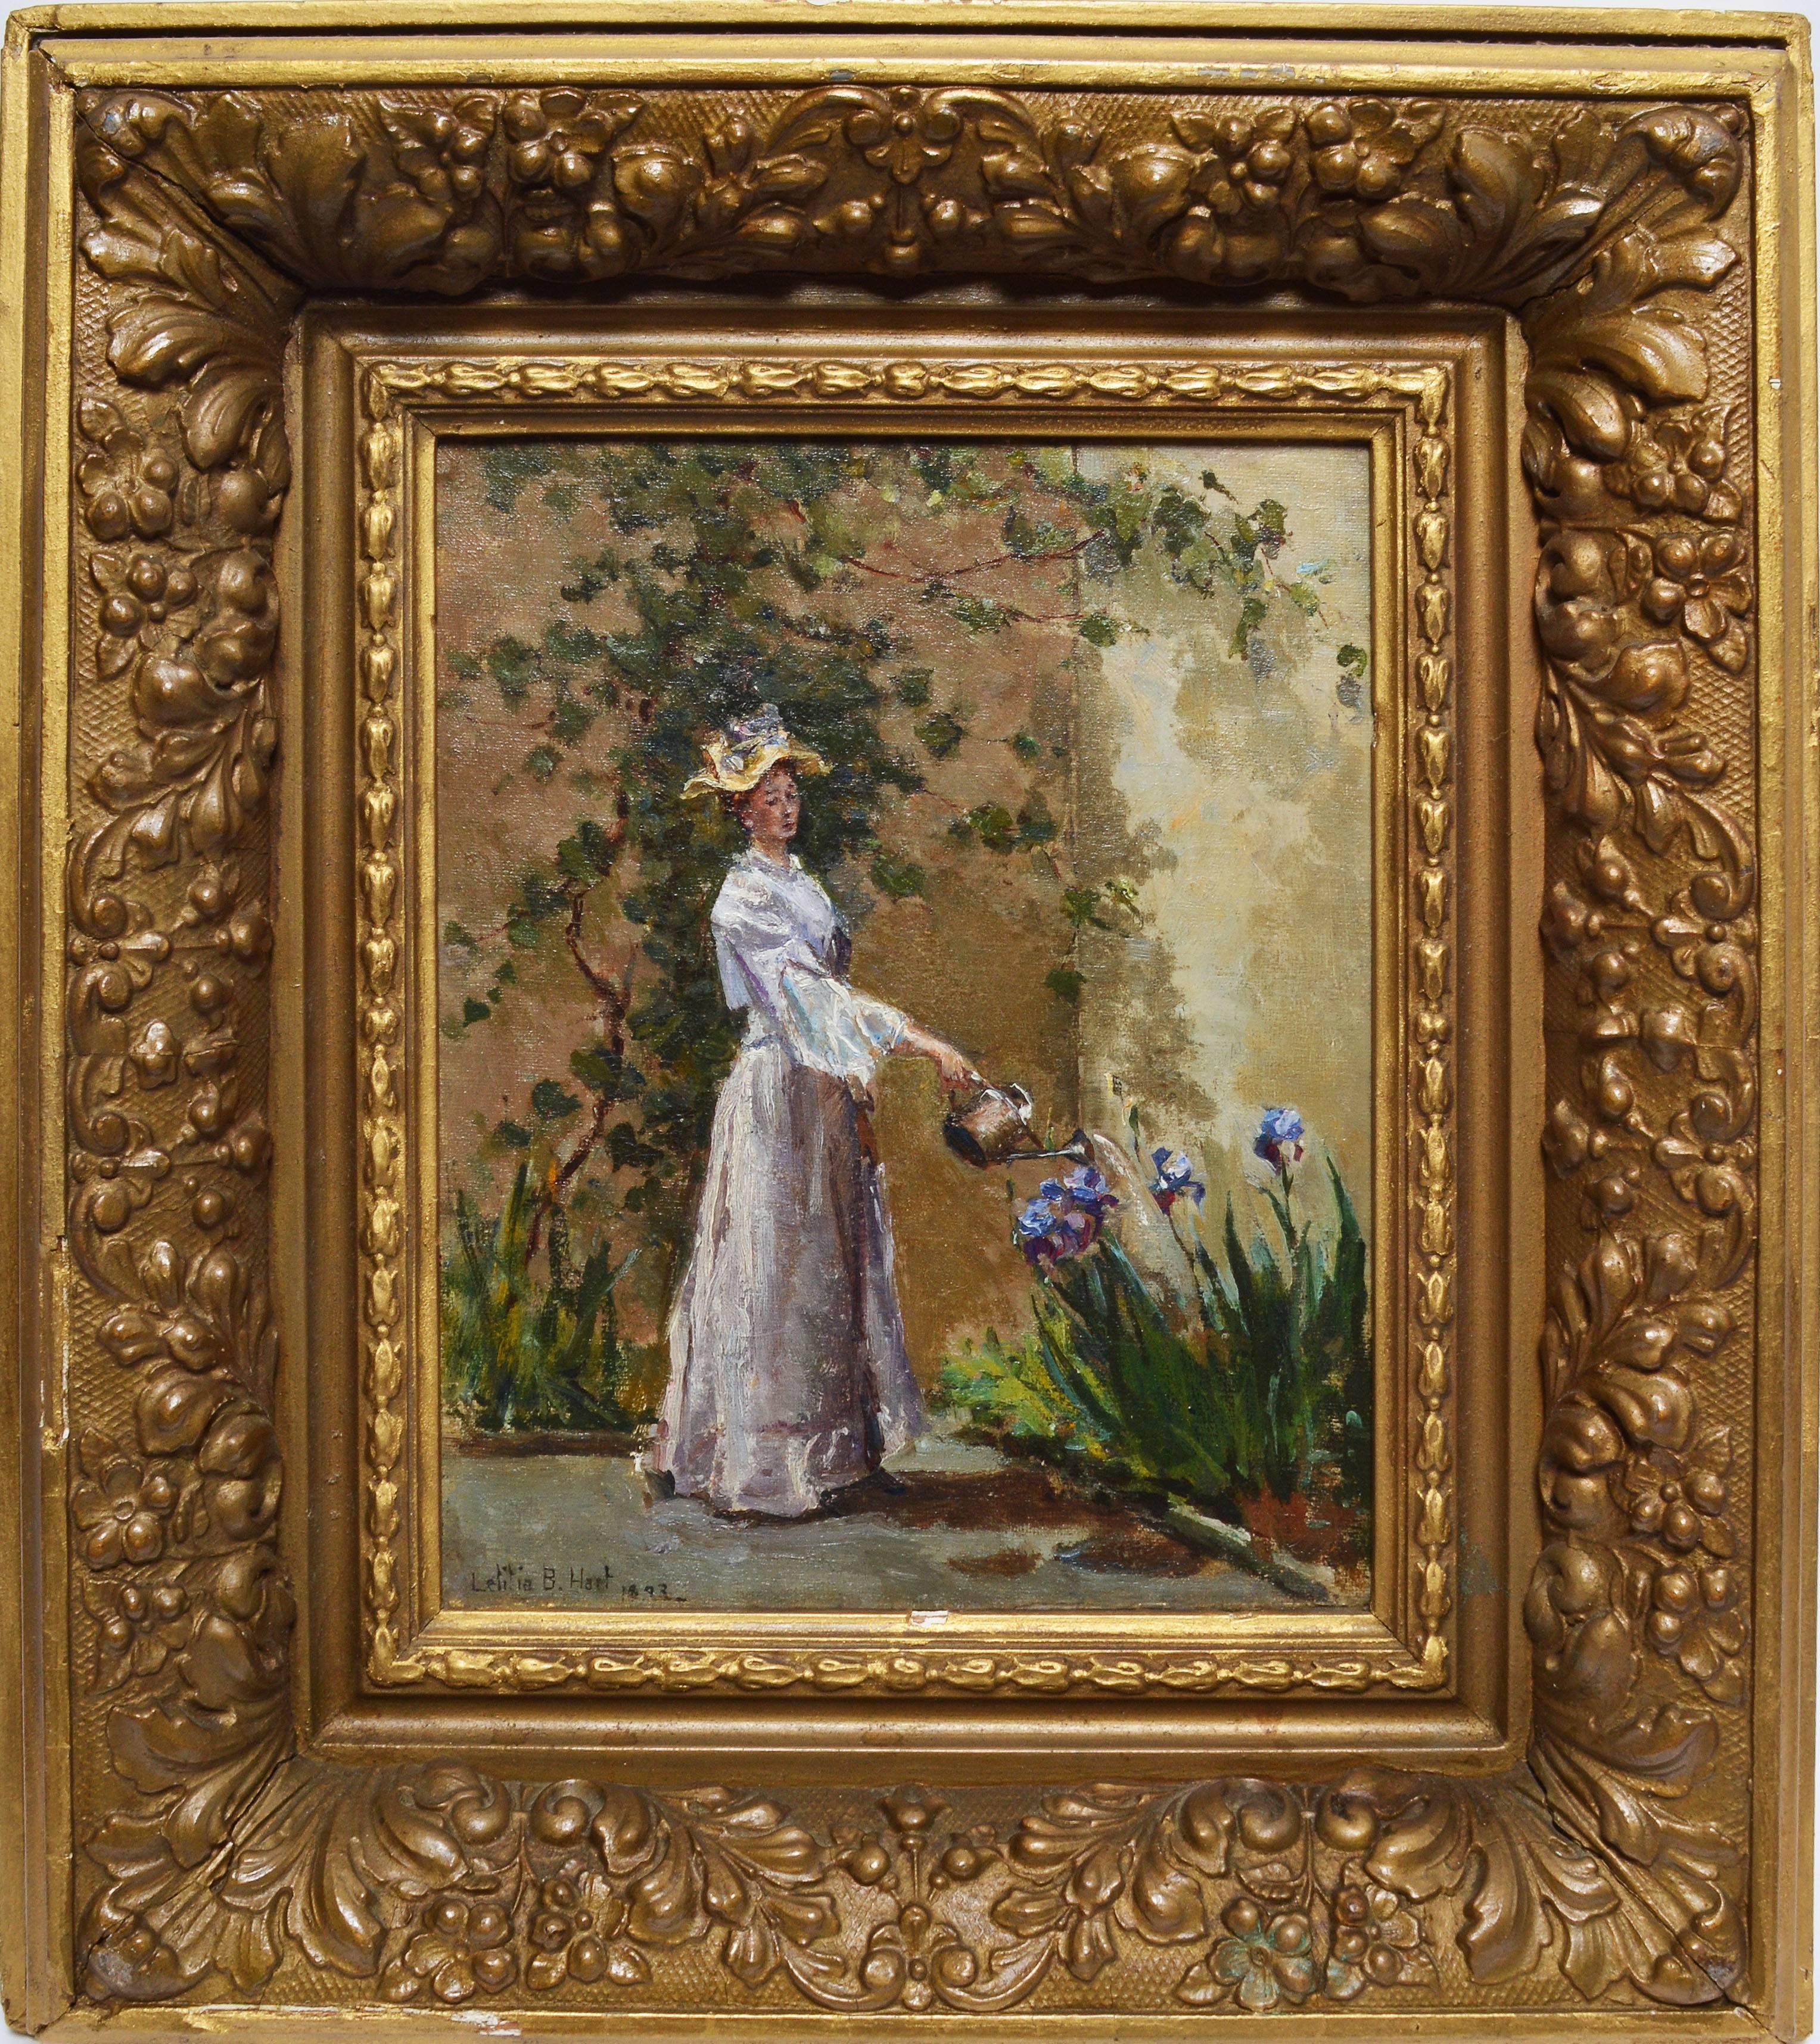 Letitia Bonnet Hart  Portrait Painting - Watering the Flowers by Letitia Bonnet Hart